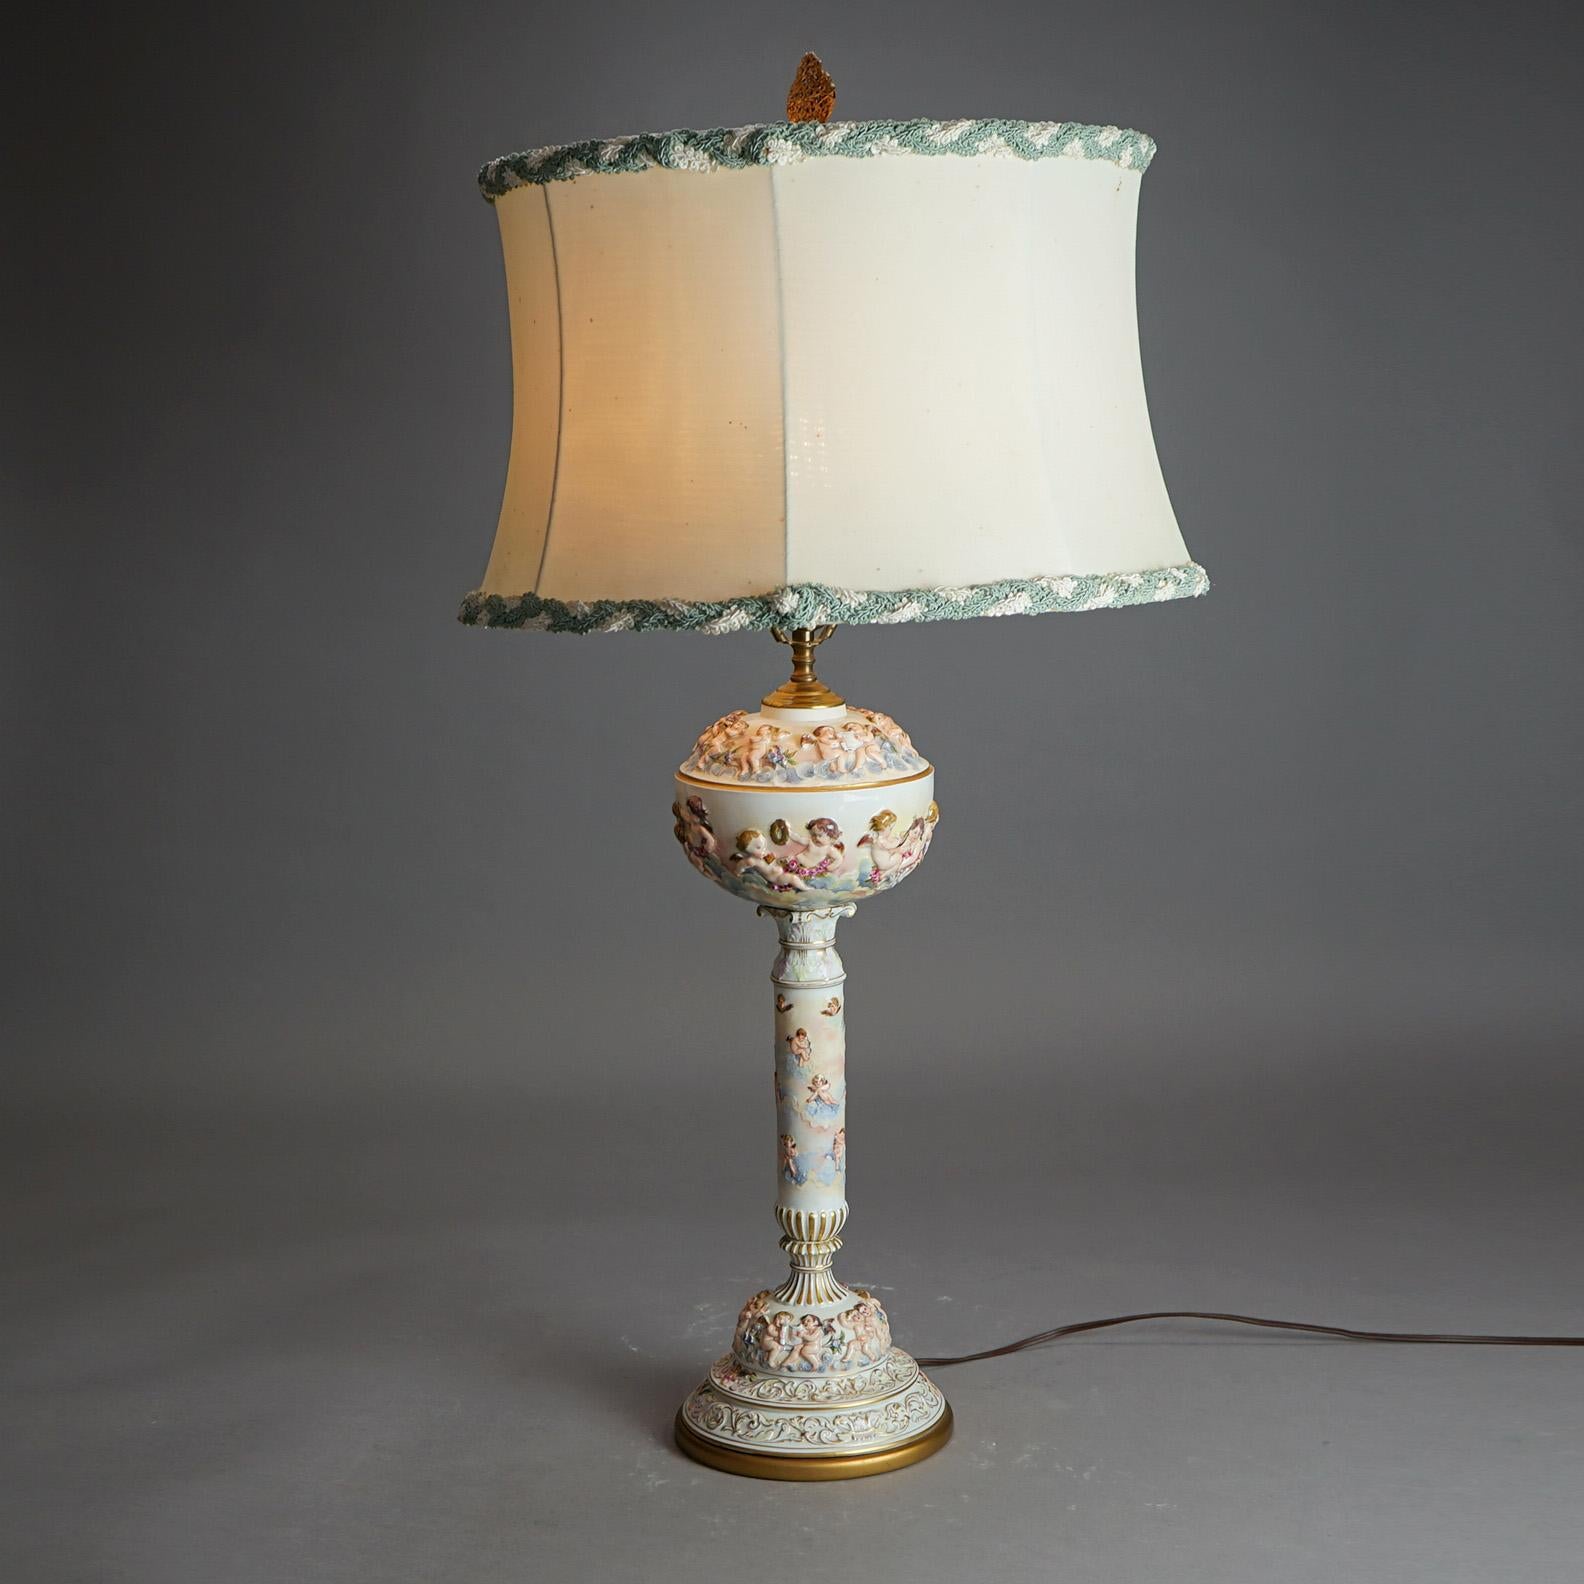 Ancienne lampe de table classique italienne en porcelaine gaufrée avec chérubin, peinte à la main et dorée, c1920

Mesures - 35,5 